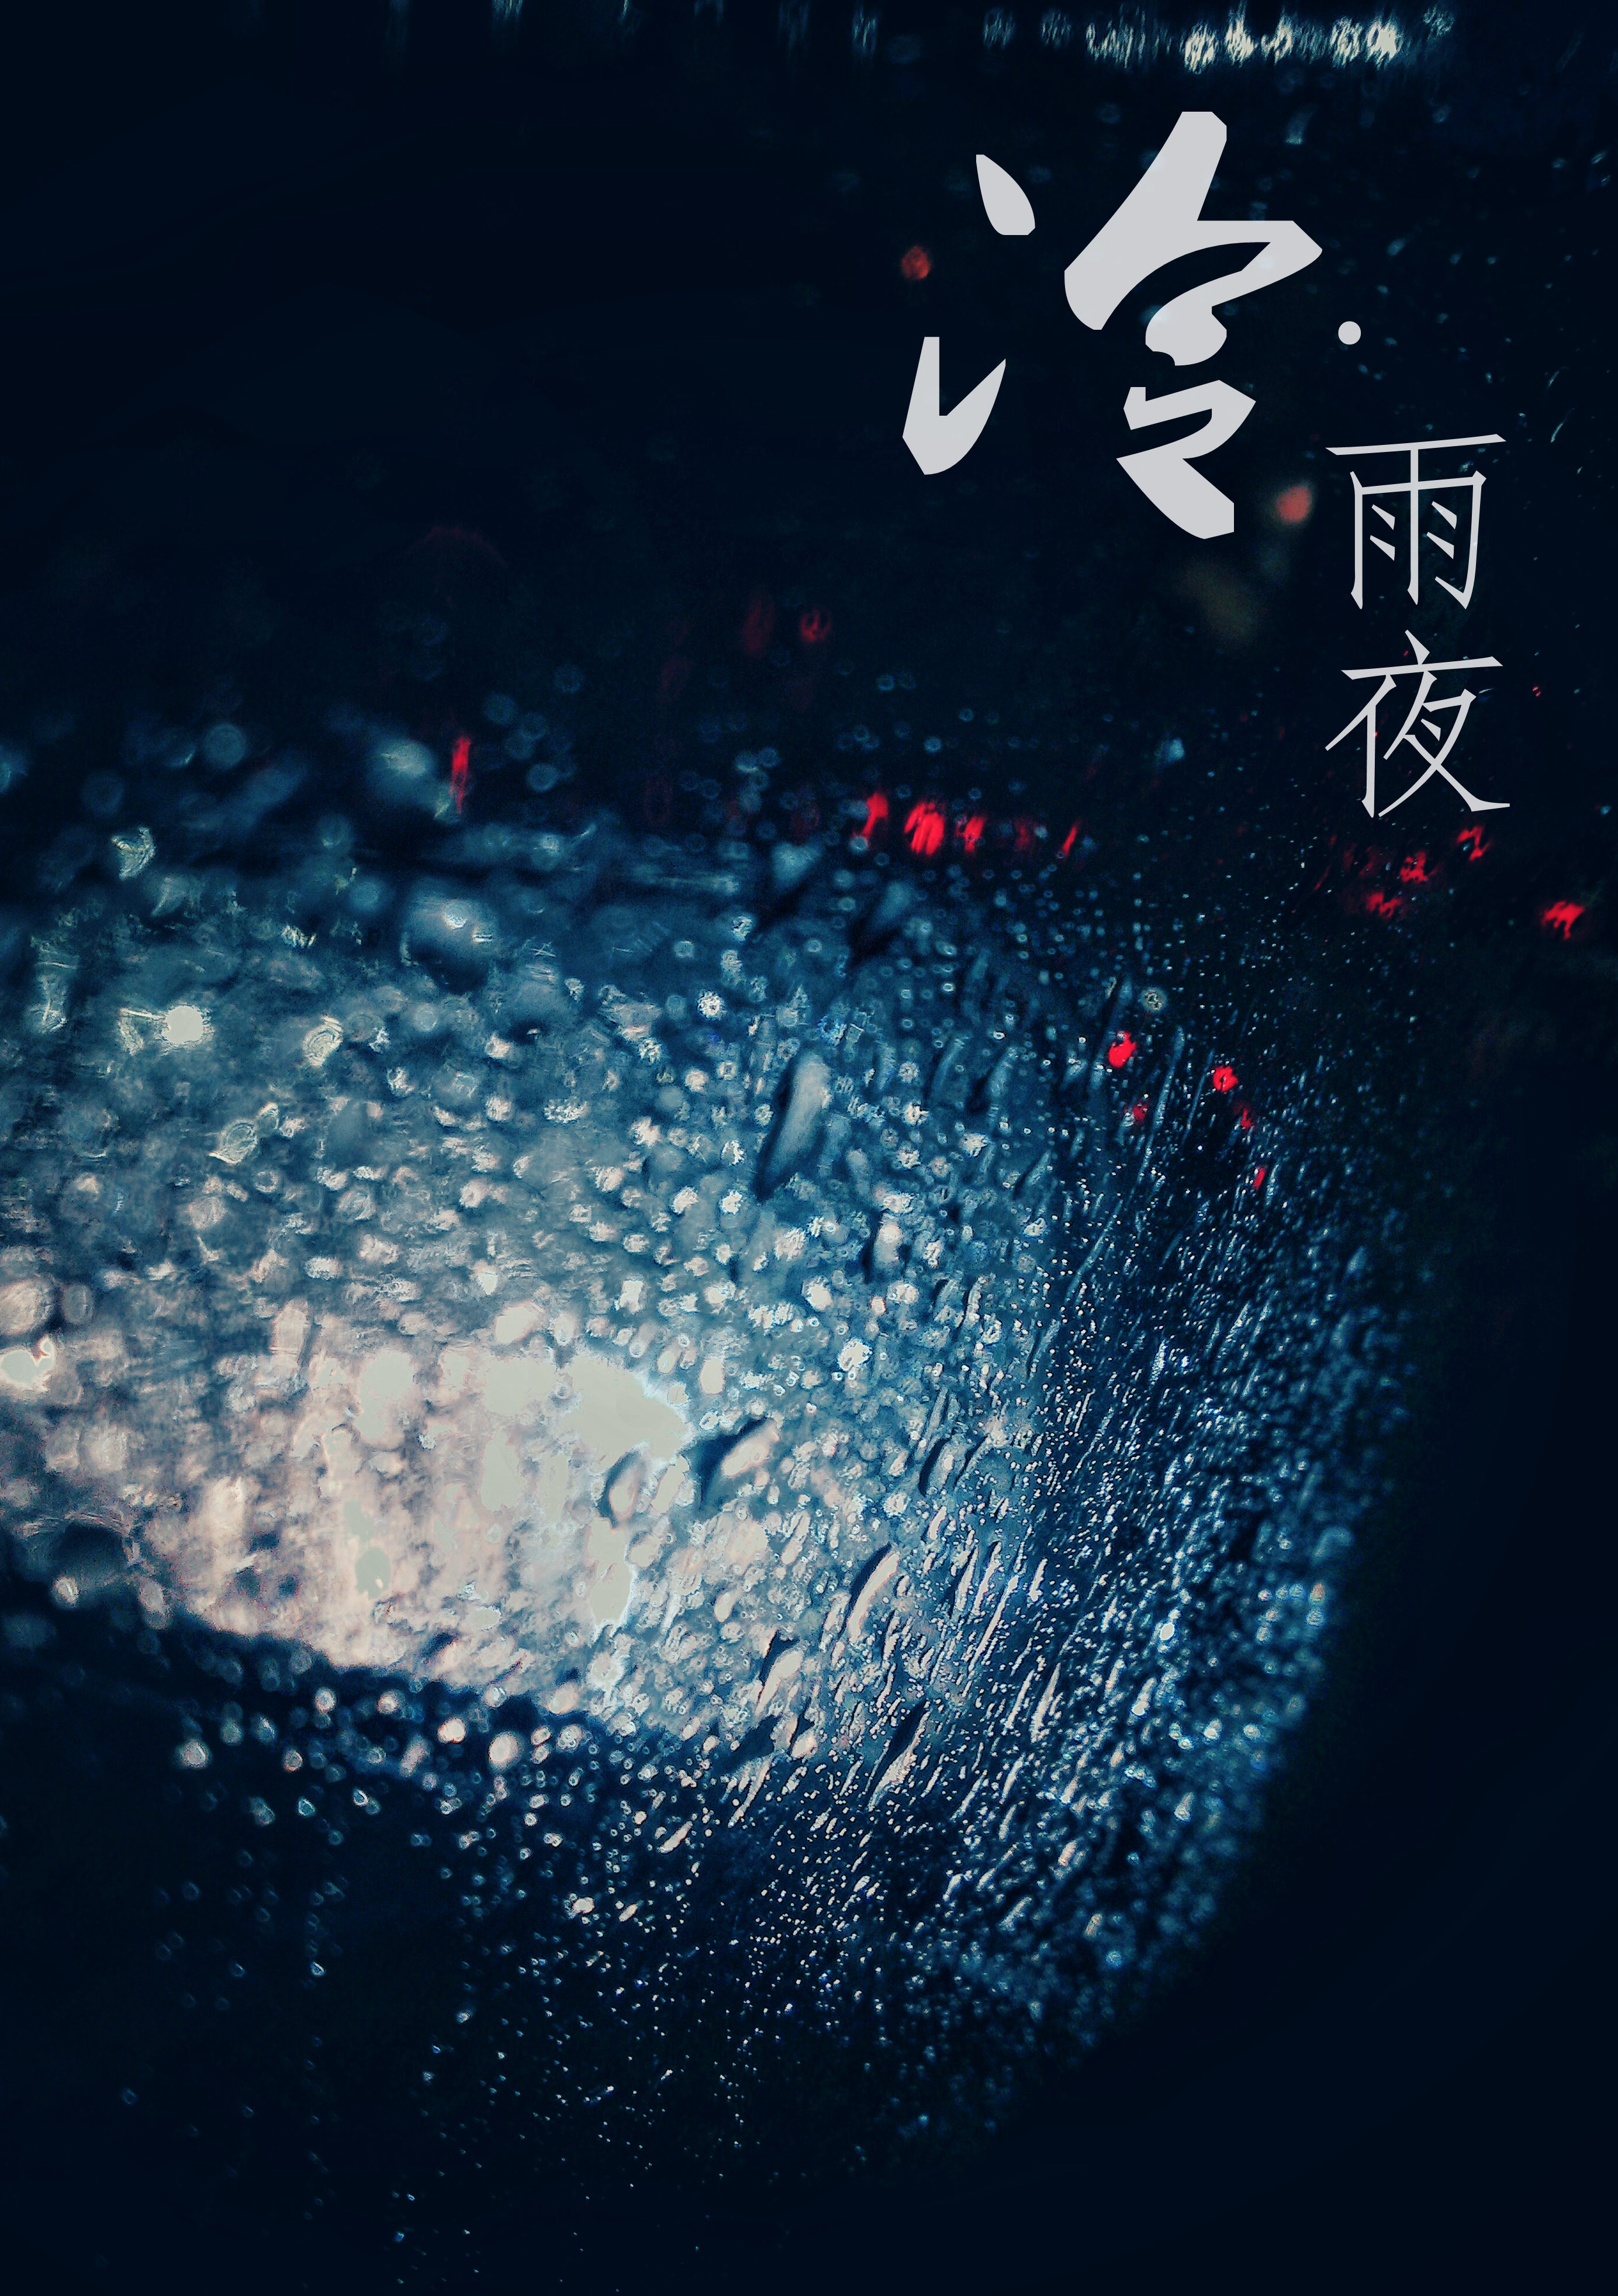 冷雨夜MV图片